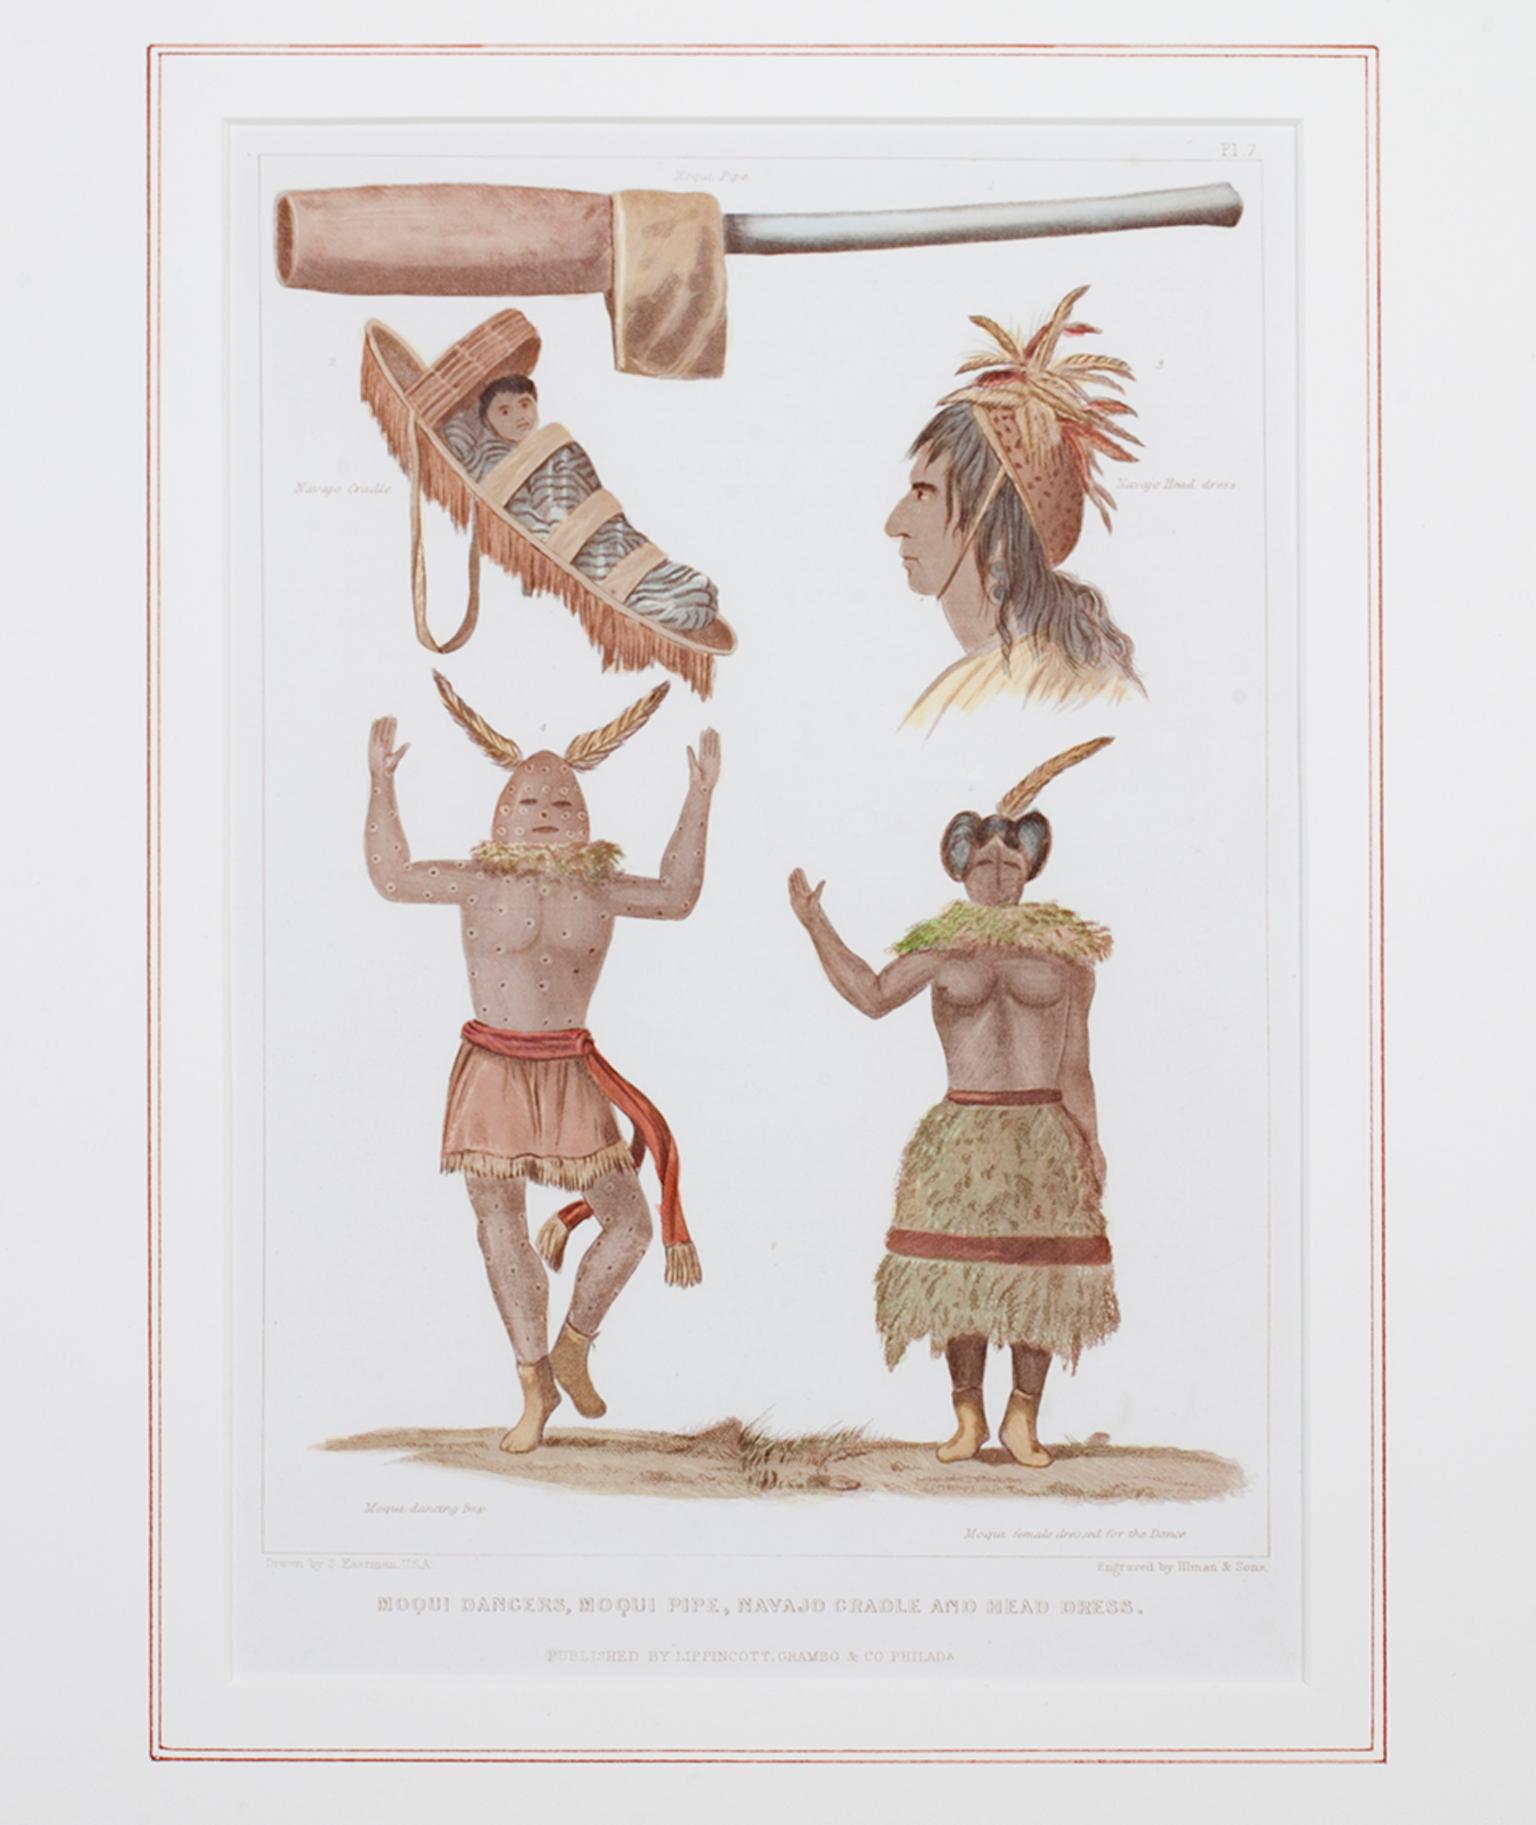 "Moqui Dancers, Moqui Pipe, Navajo Cradle & Headdress" ist ein handkolorierter Stich von Seth Eastman. Es zeigt enzyklopädische Darstellungen der Kultur der amerikanischen Ureinwohner. Es wurde von Lippincott, Grambo & Co. in Philadelphia